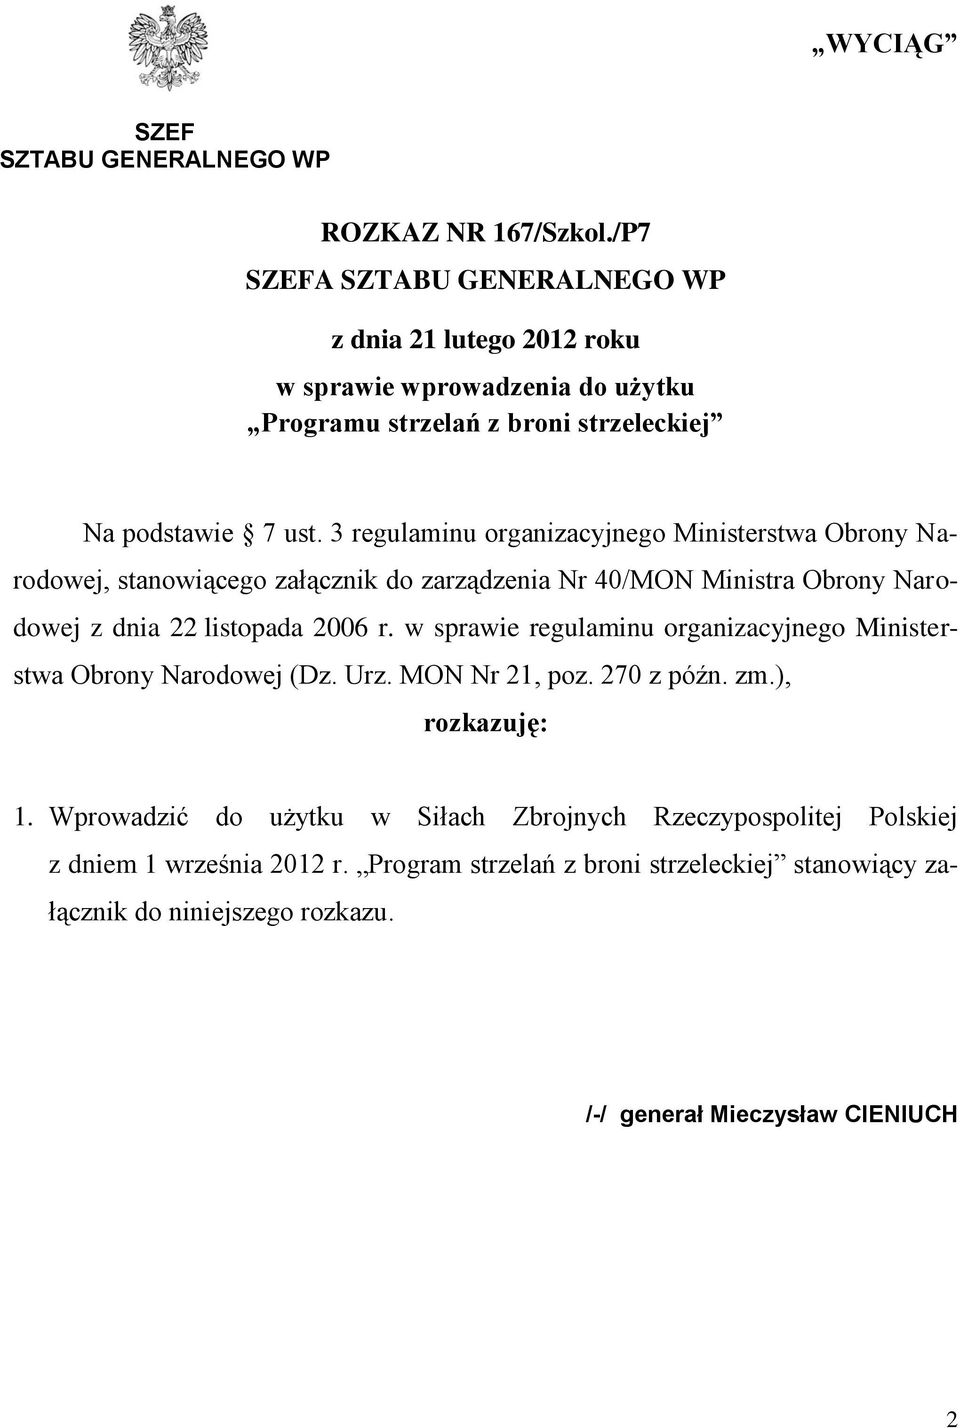 3 regulaminu organizacyjnego Ministerstwa Obrony Narodowej, stanowiącego załącznik do zarządzenia Nr 40/MON Ministra Obrony Narodowej z dnia 22 listopada 2006 r.